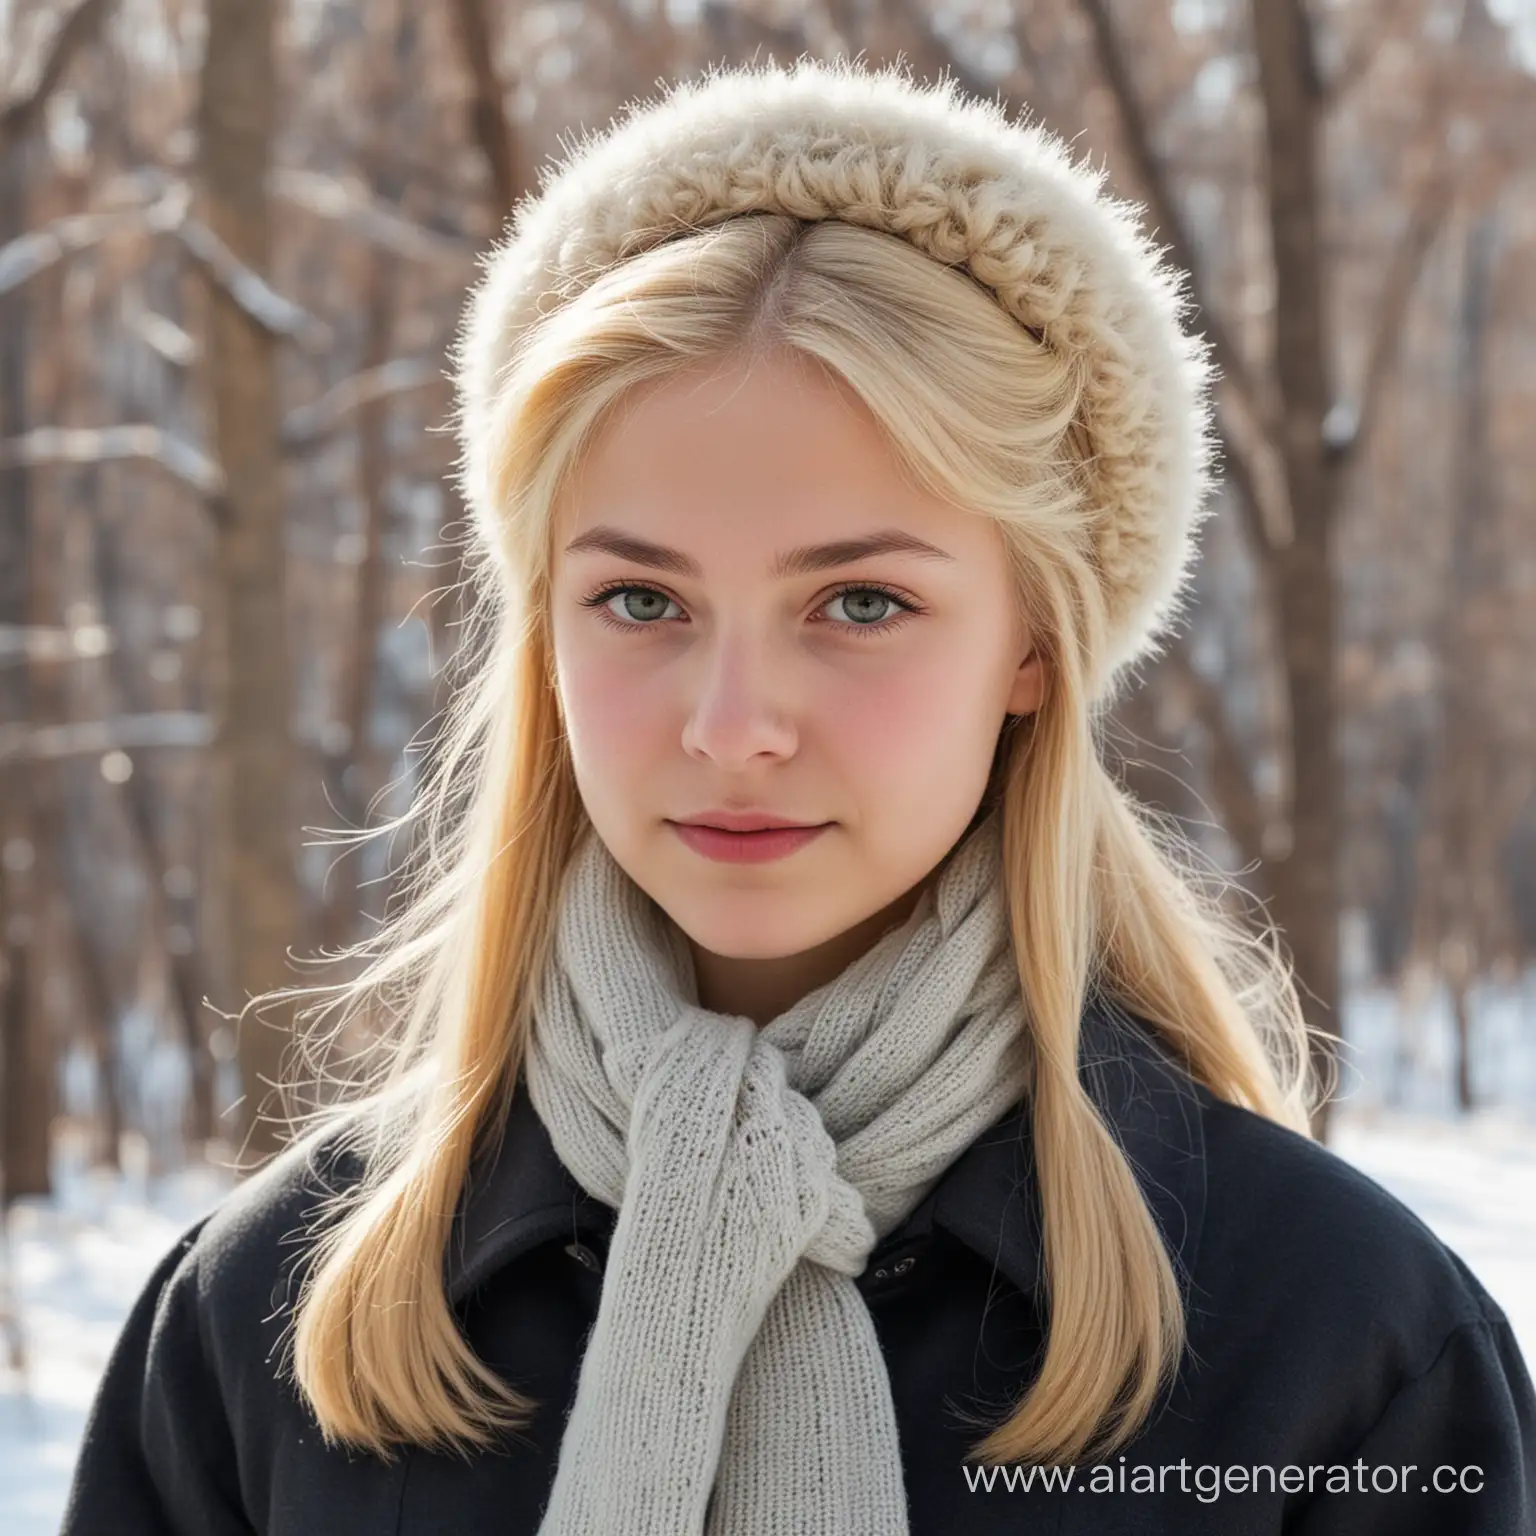 Blonde-Soviet-Schoolgirl-in-Winter-Outfit